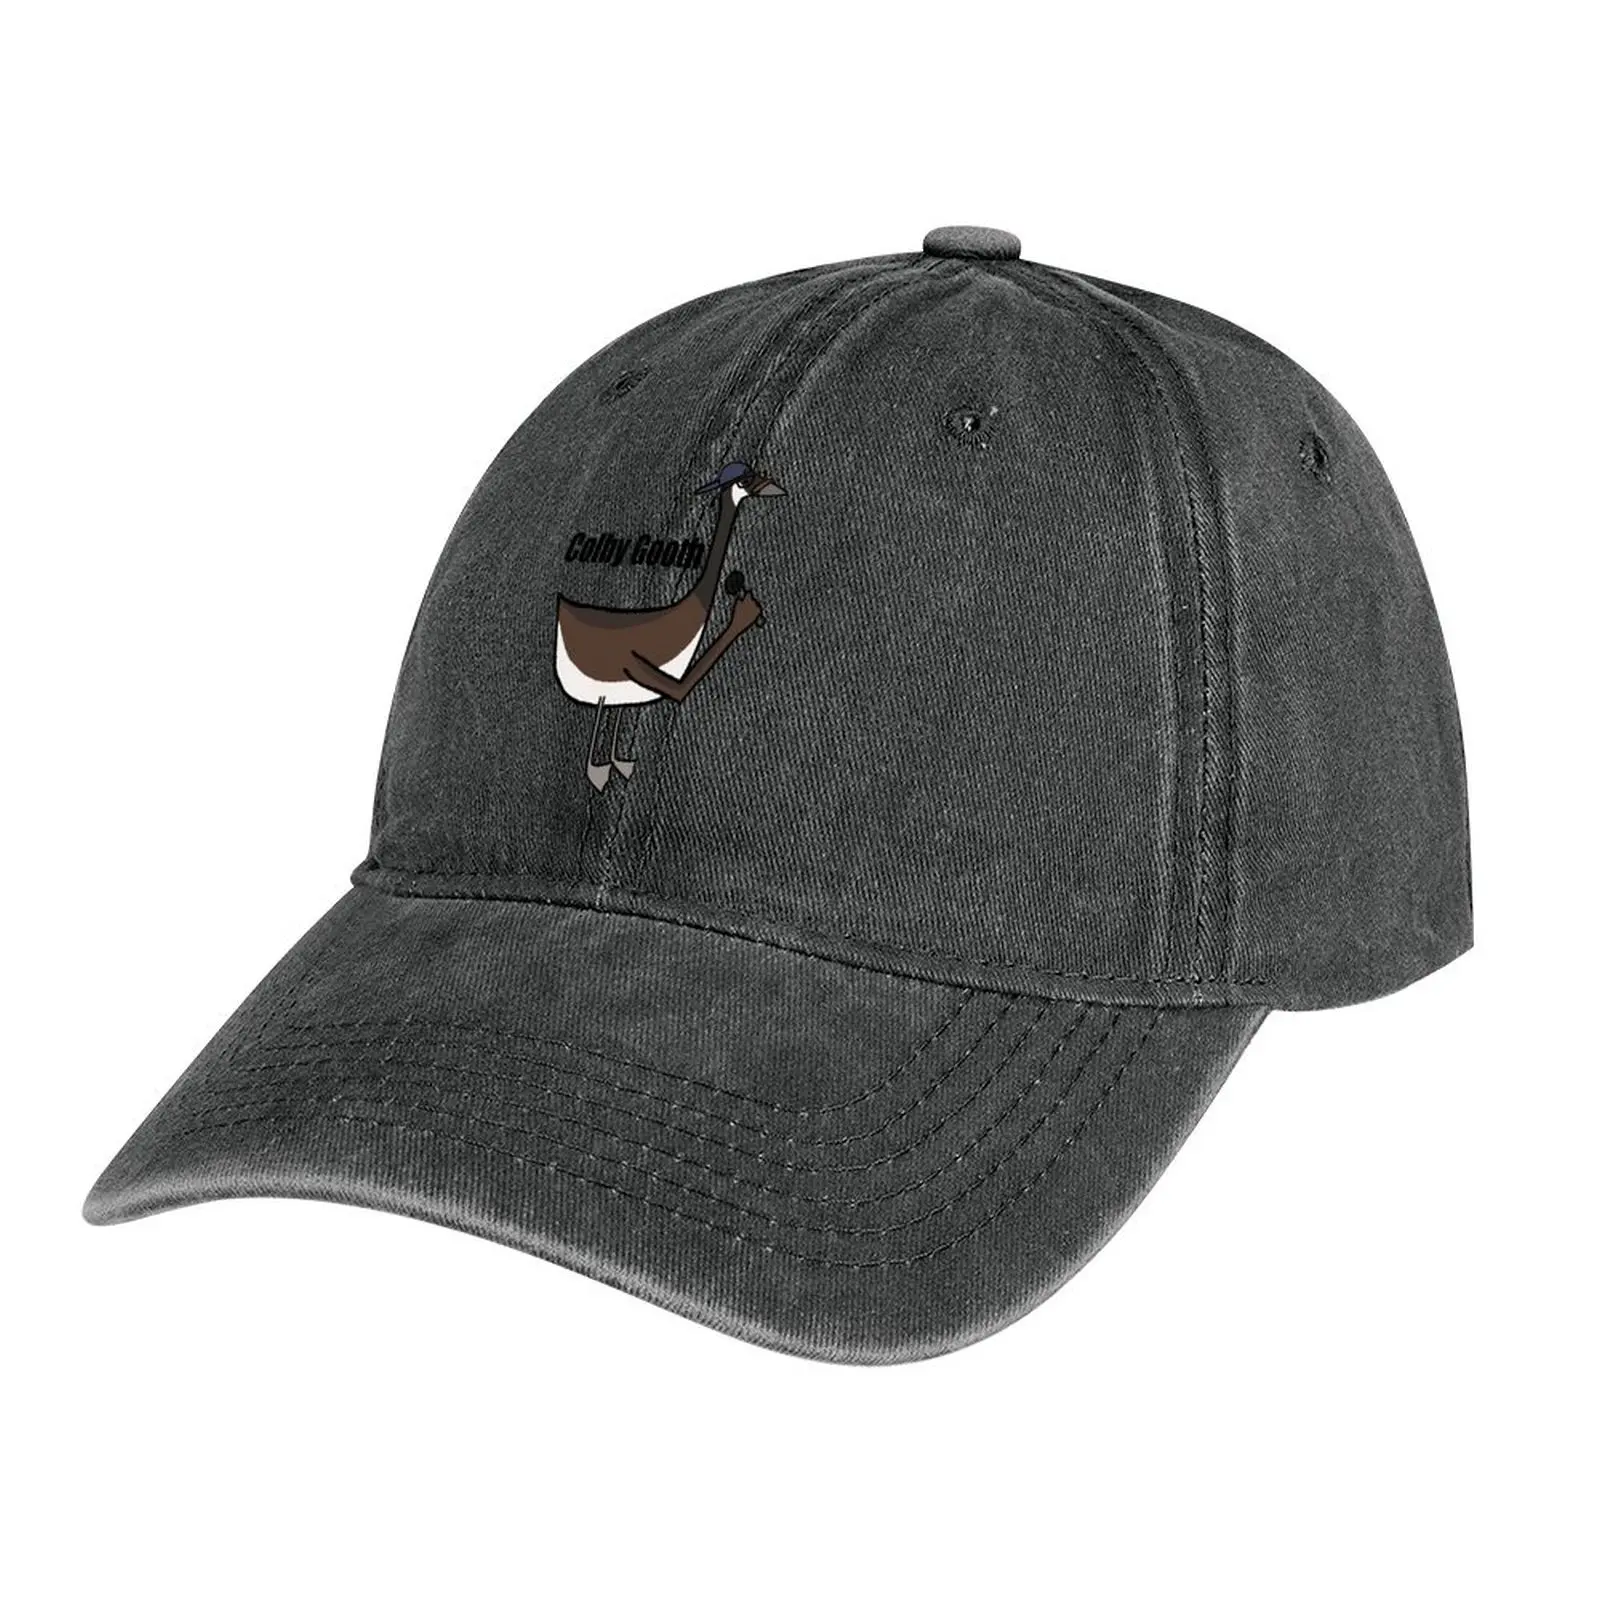 

Ковбойская шляпа Colby gooth, солнцезащитная Кепка, модная Мужская теннисная Женская кепка